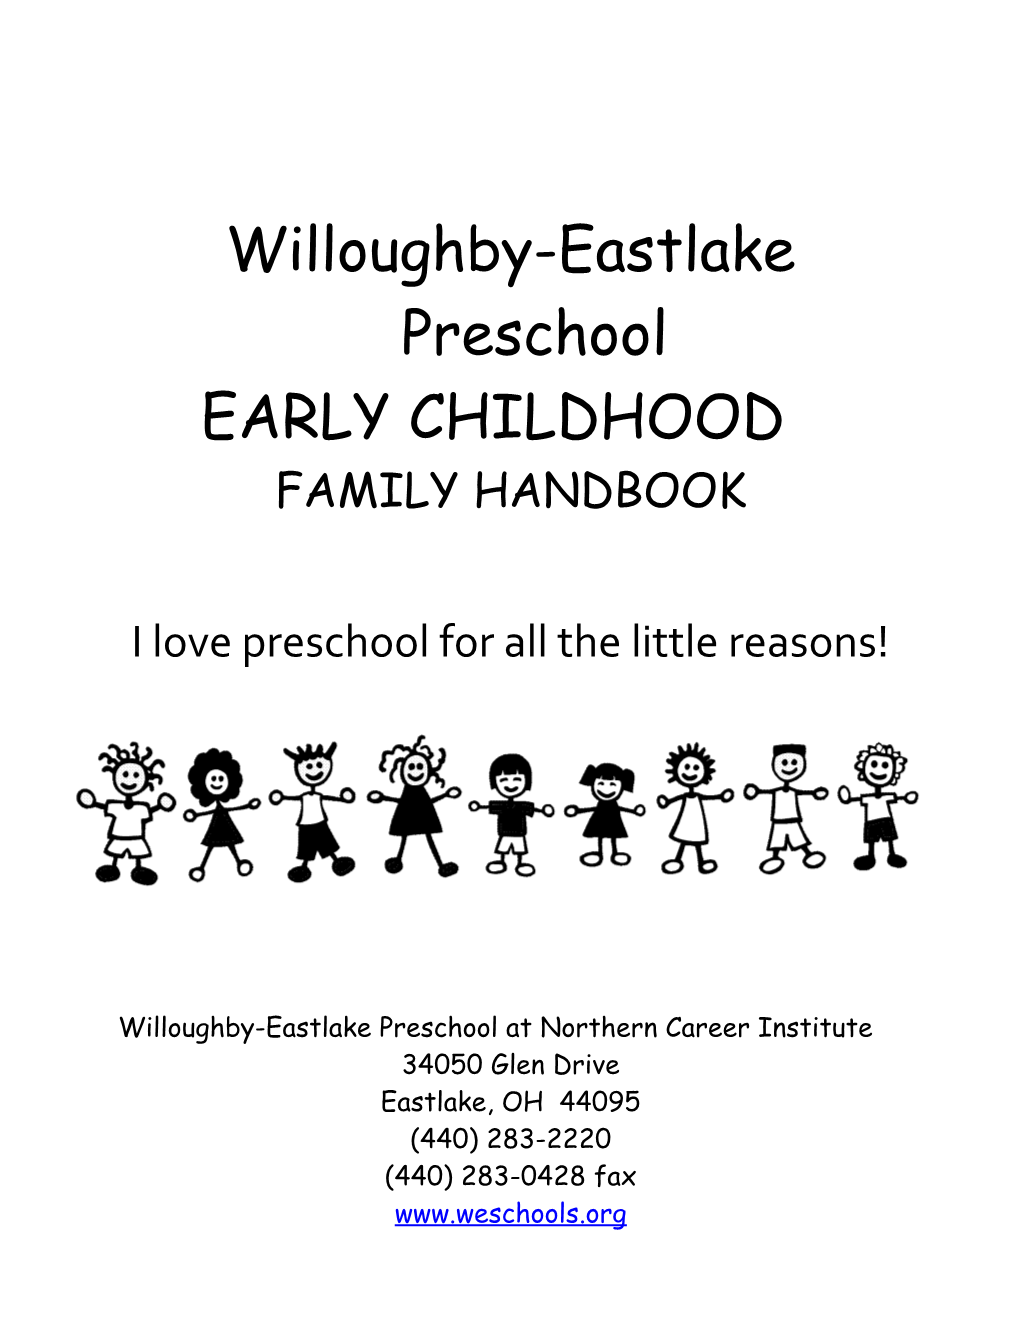 Willoughby-Eastlake Preschool